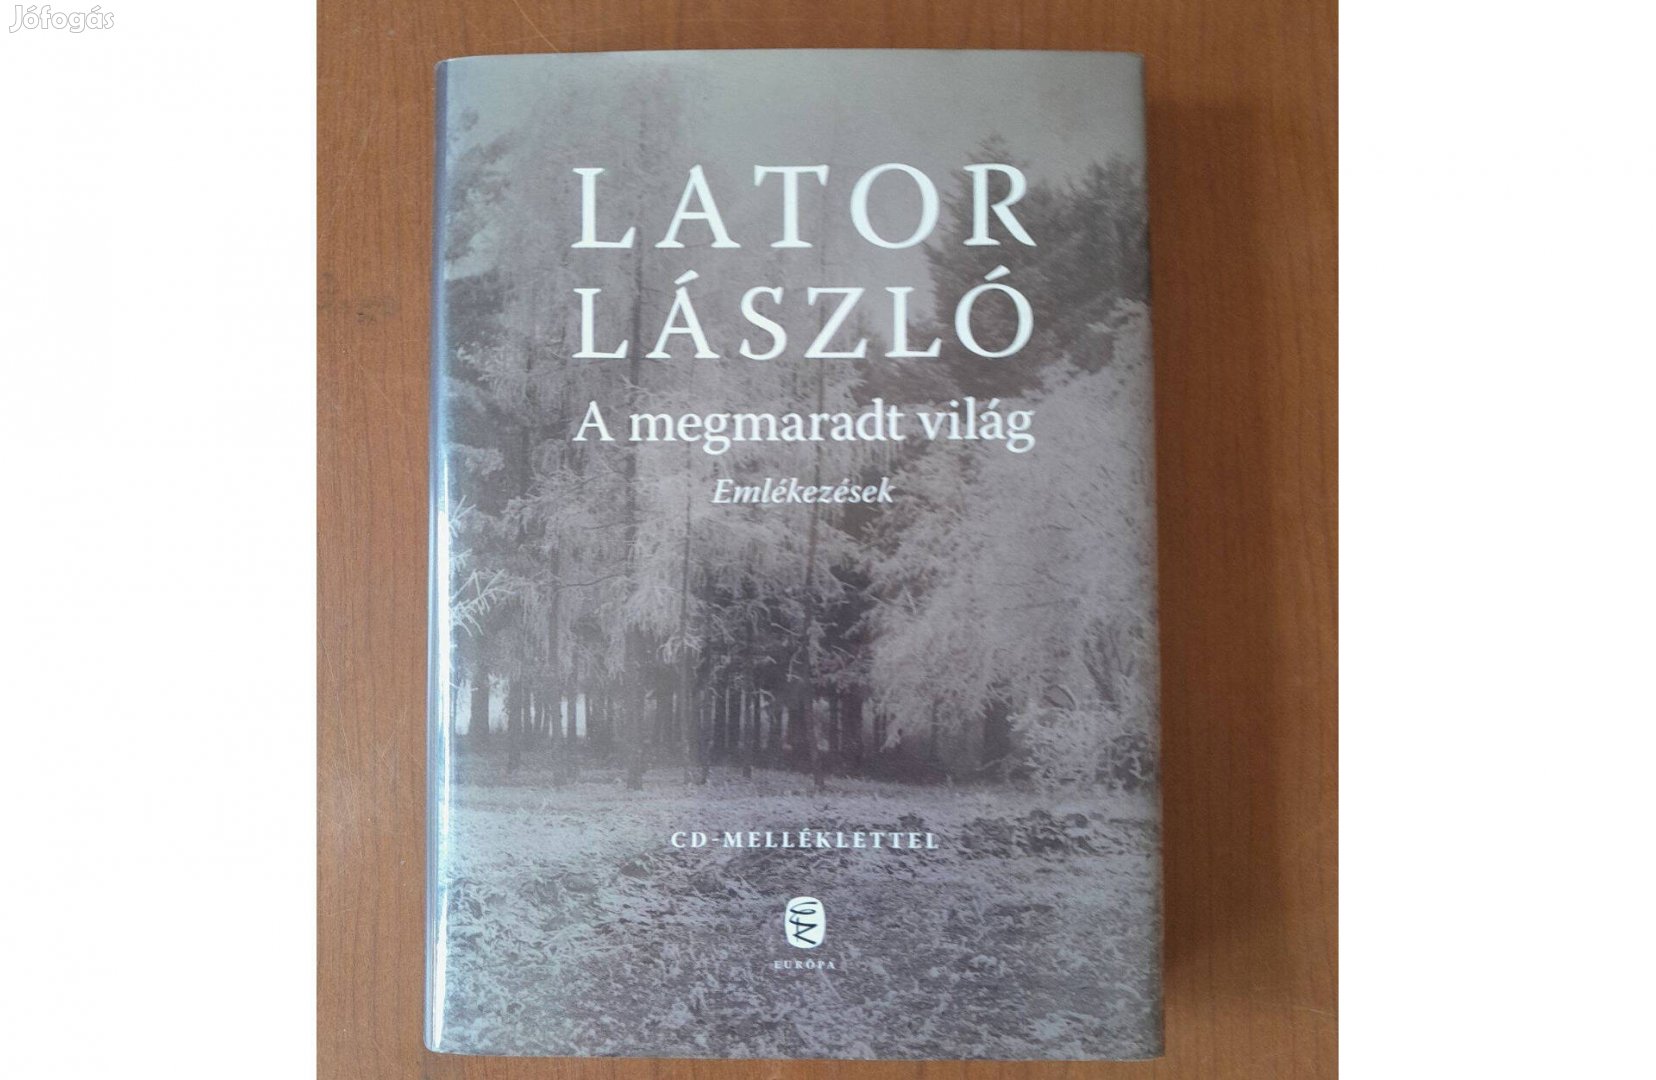 Lator László - A megmaradt világ - CD melléklettel